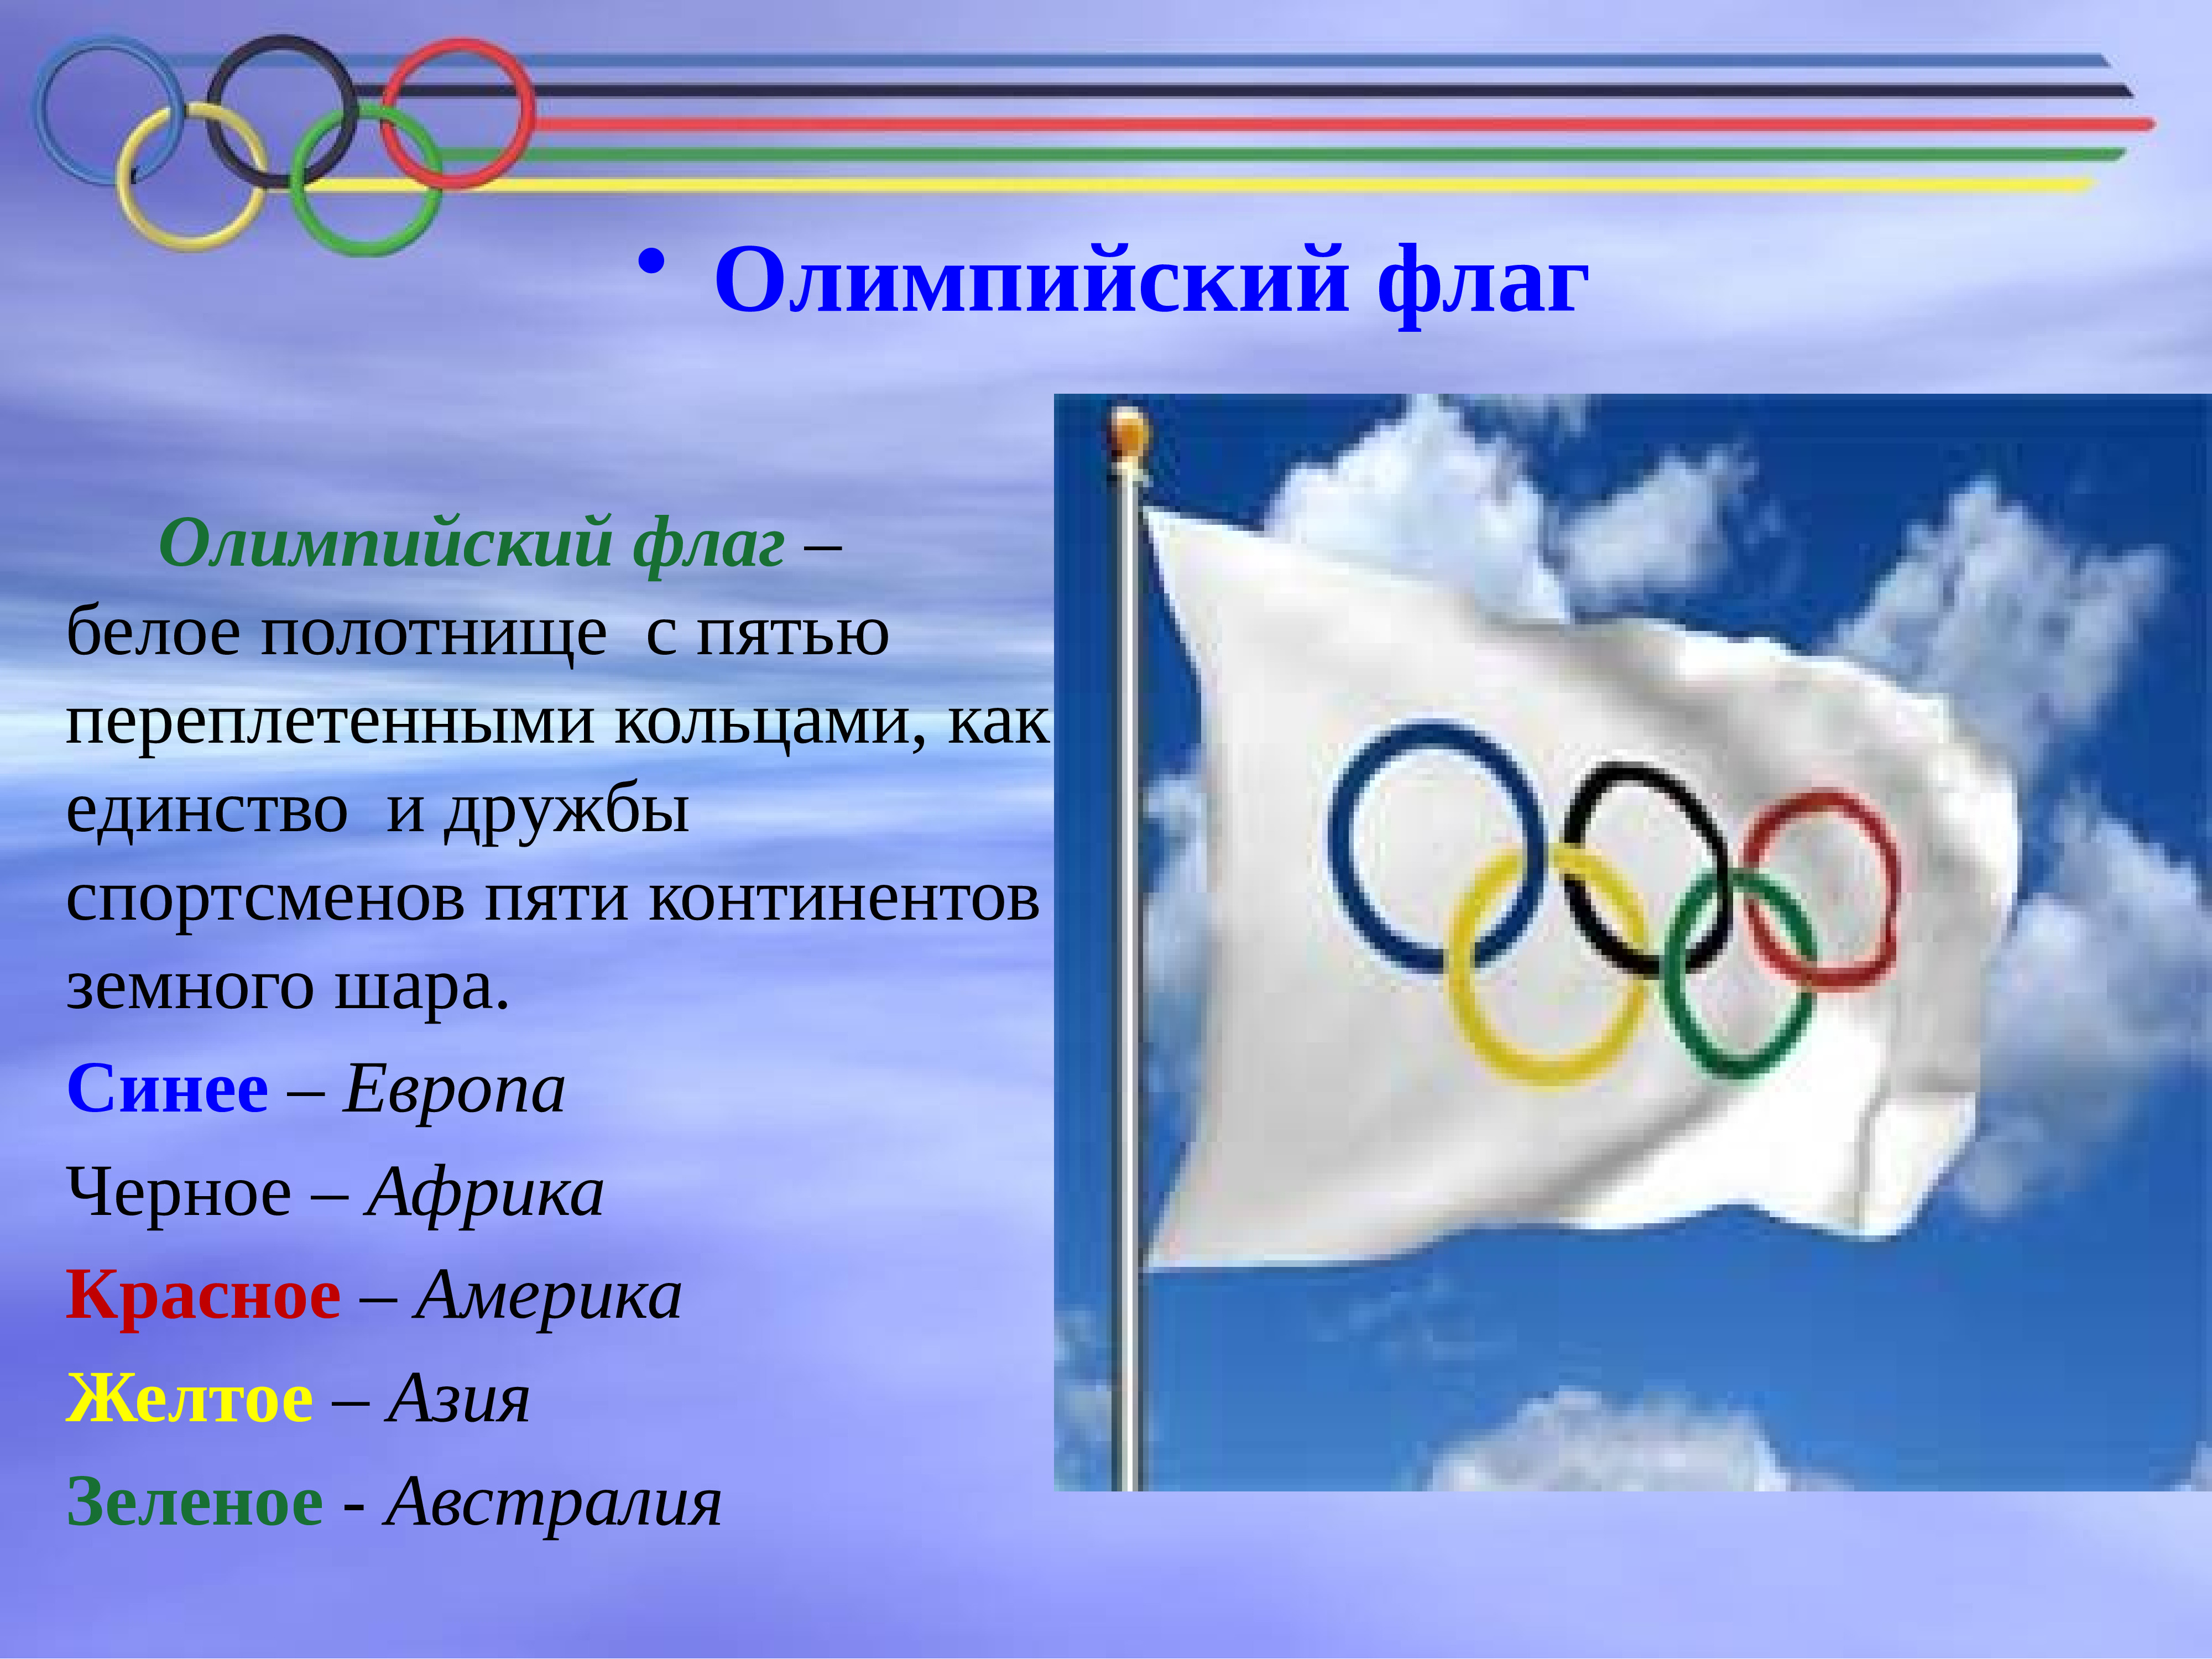 Полотнище олимпийского флага